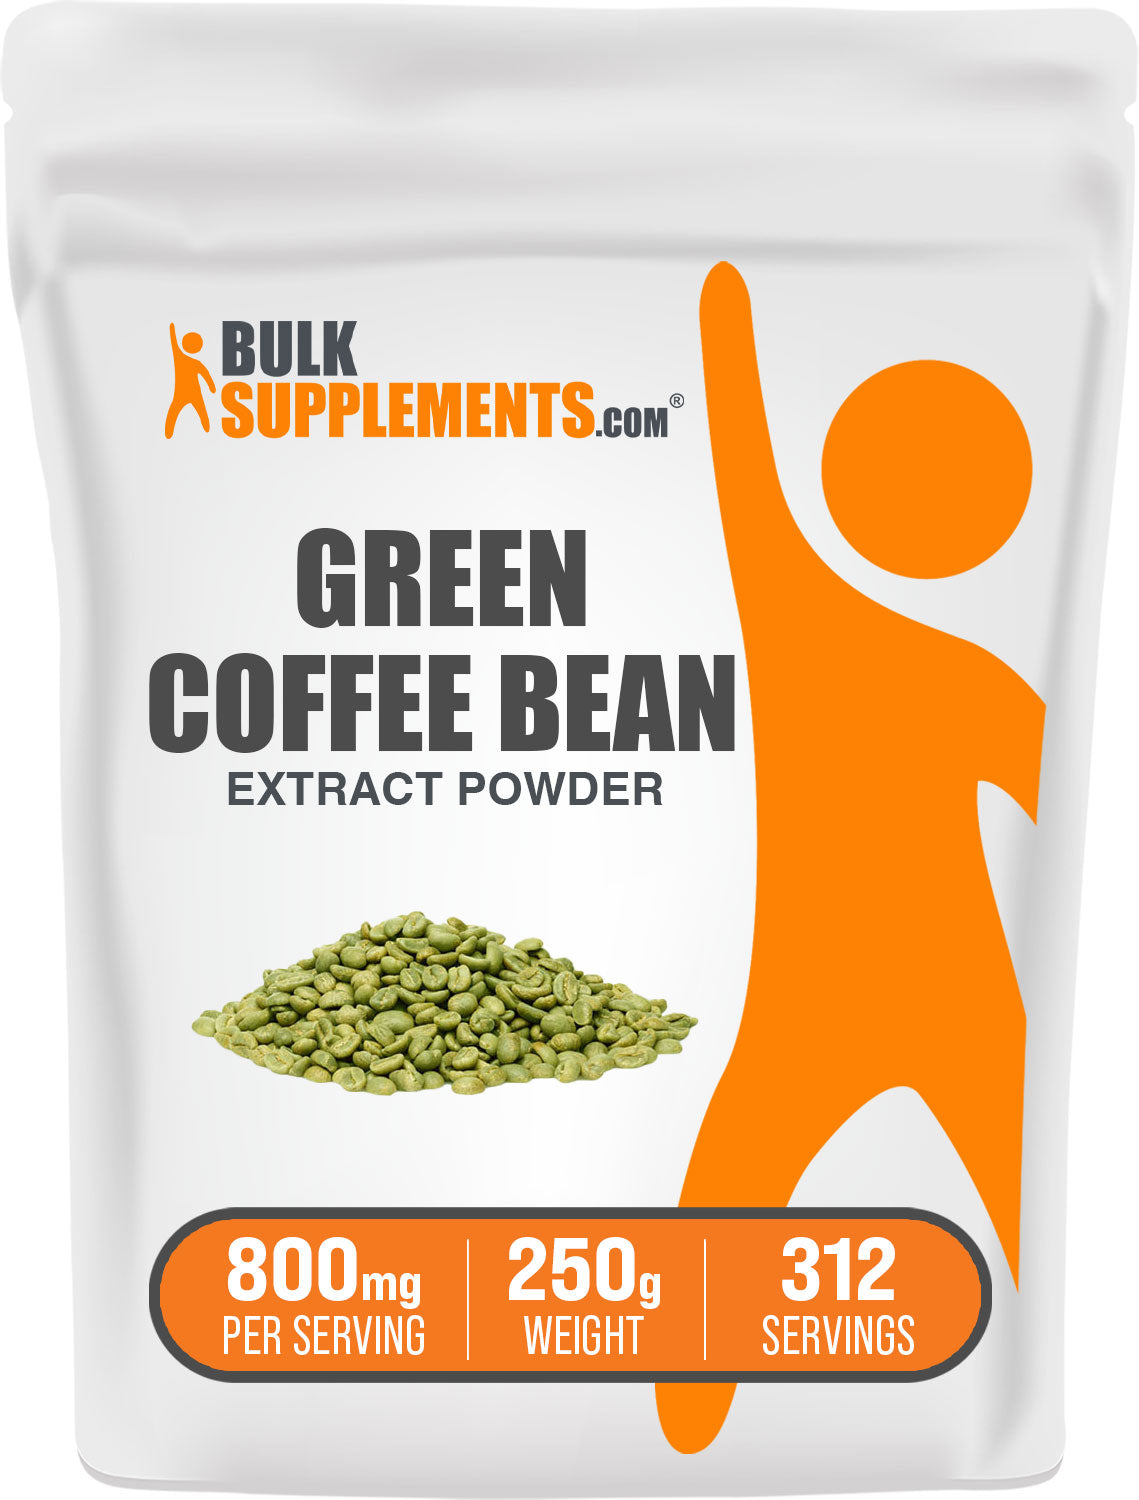 BulkSupplements.com Green Coffee Bean Extract Powder 250g bag